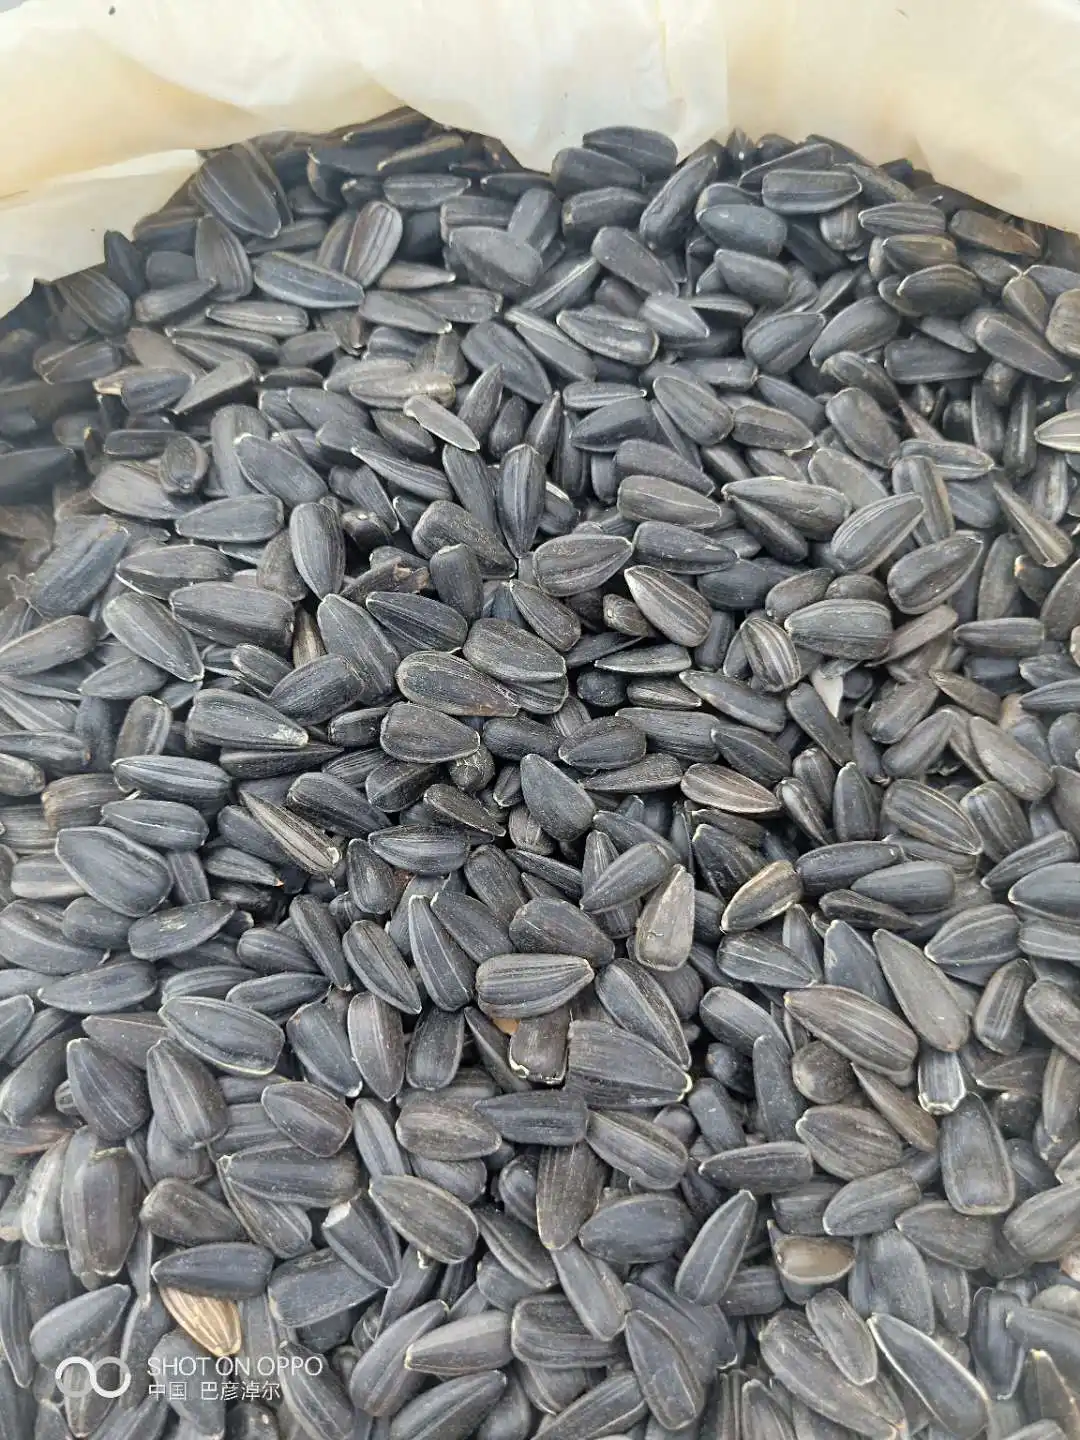 Commercio all'ingrosso interno Mongolia China origine Non-OGM secchi semi di girasole sfuso per olio nero sgusciato olio crudo semi di girasole